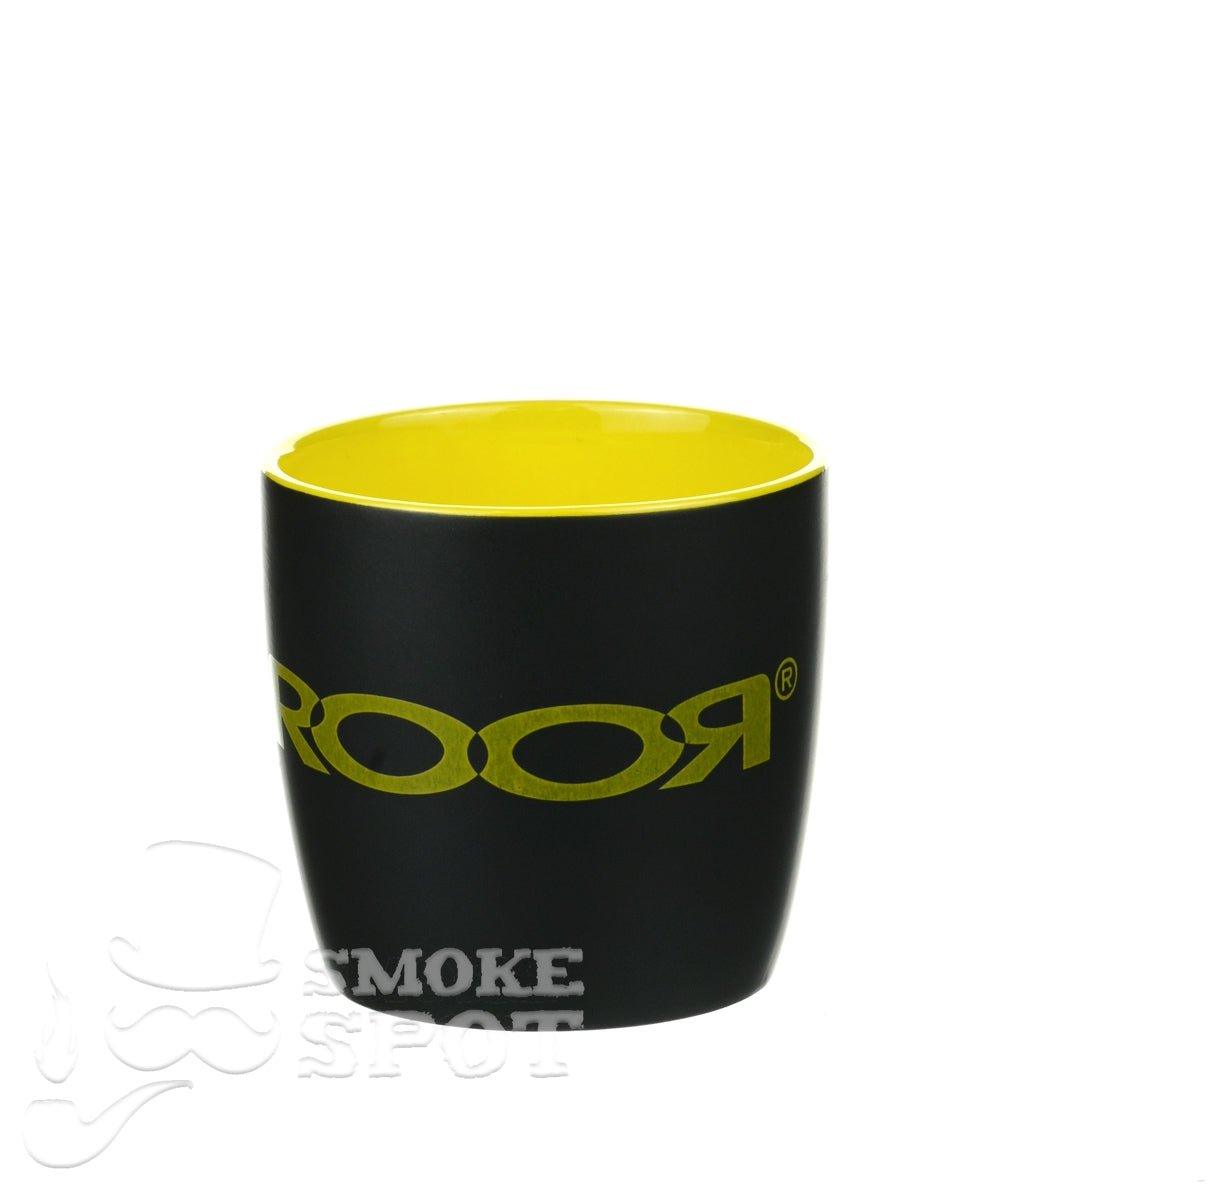 ROOR glass cup yellow - Smoke Spot Smoke Shop